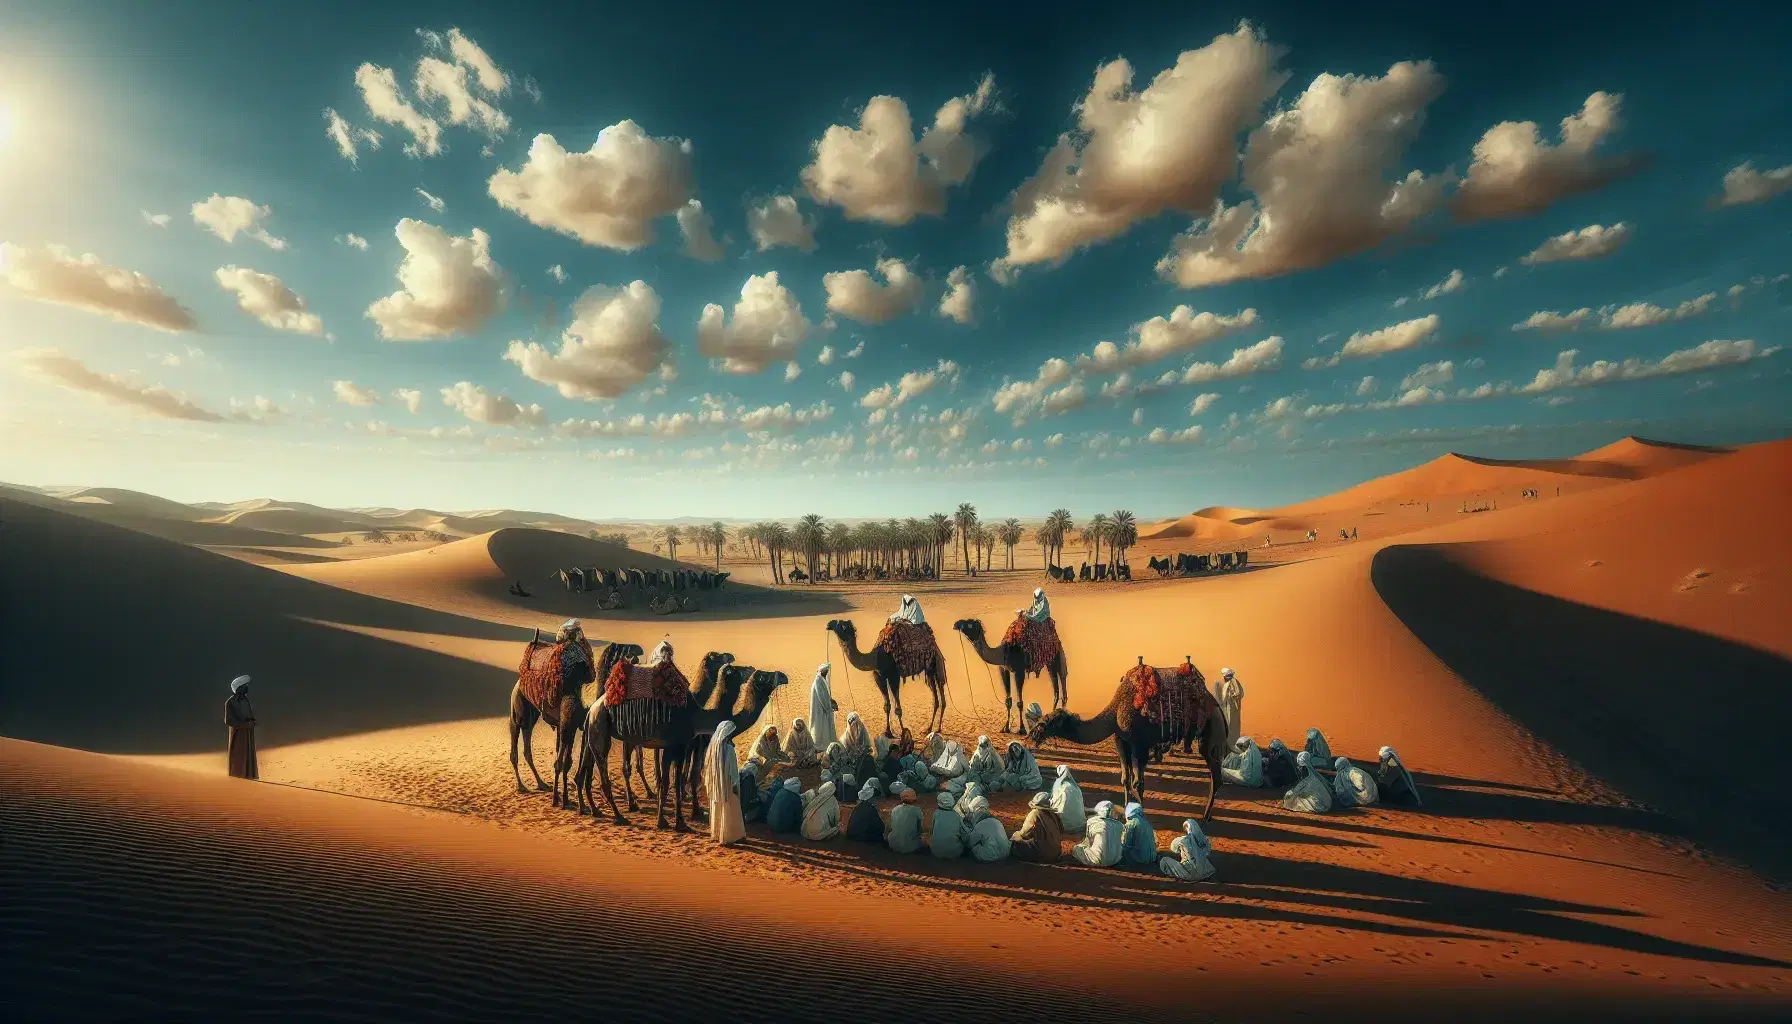 Paesaggio desertico con Beduini in abiti tradizionali intorno a cammelli, tende in lontananza e oasi con palme sotto cielo azzurro.